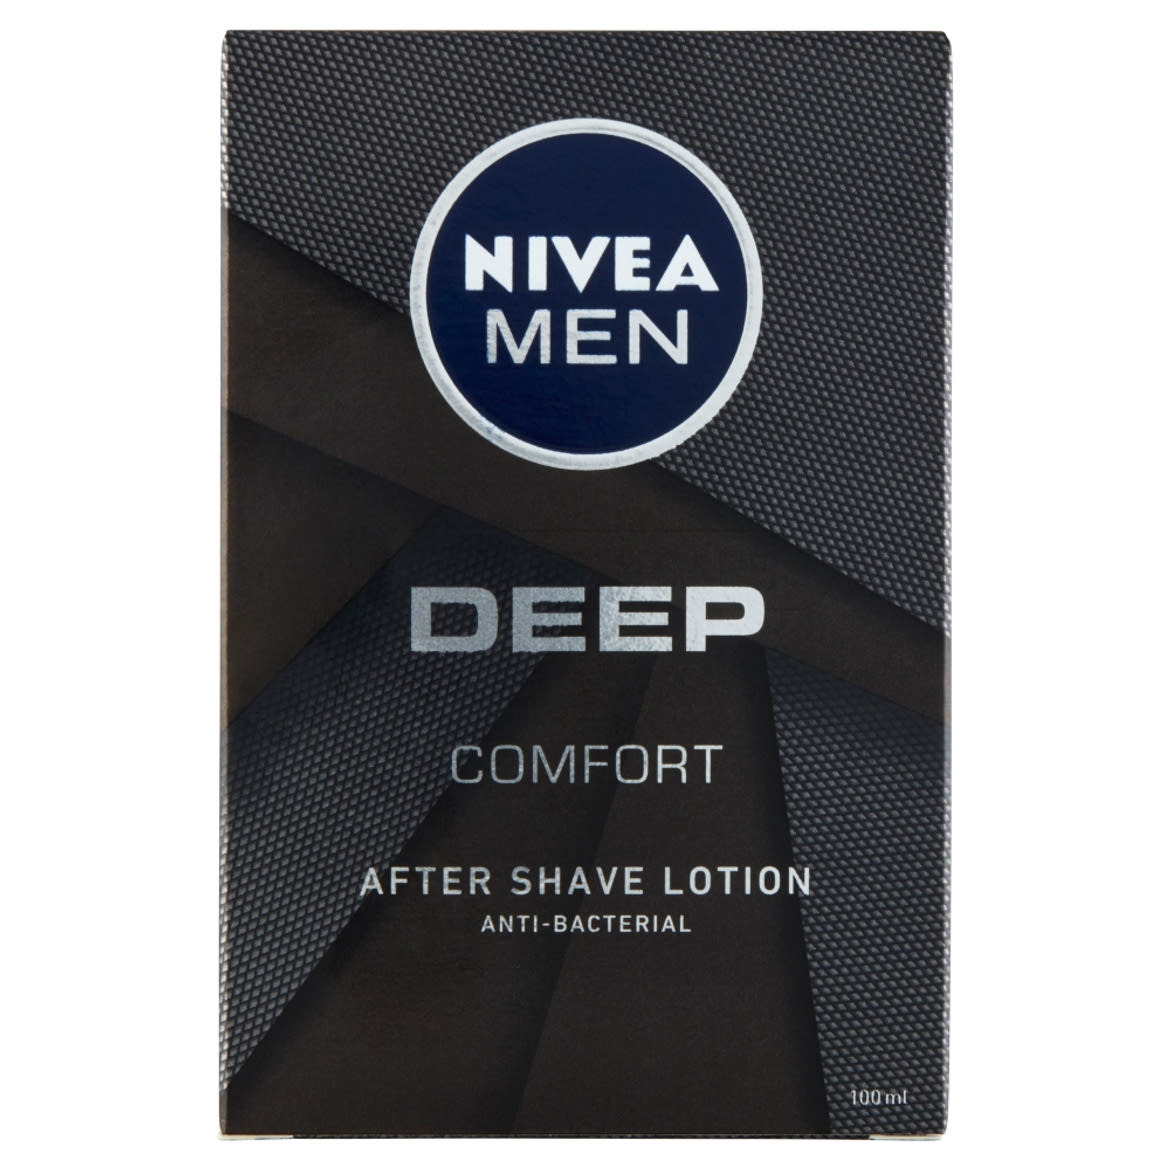 NIVEA MEN Deep after shave lotion